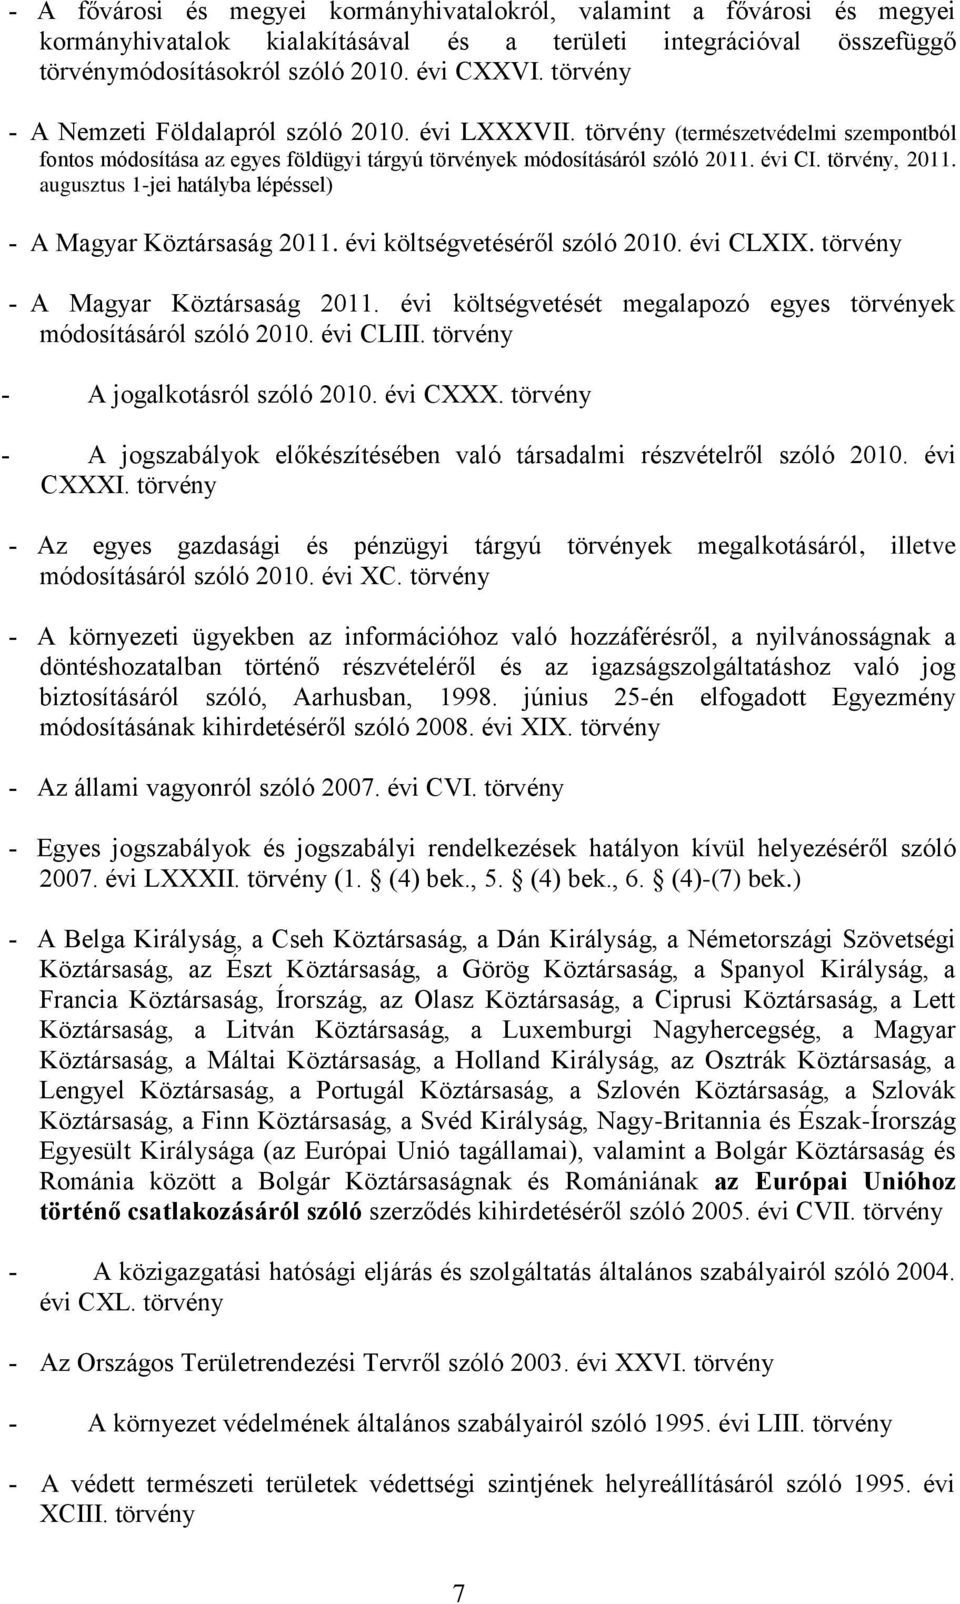 augusztus 1-jei hatályba lépéssel) A Magyar Köztársaság 2011. évi költségvetéséről szóló 2010. évi CLXIX. törvény A Magyar Köztársaság 2011.